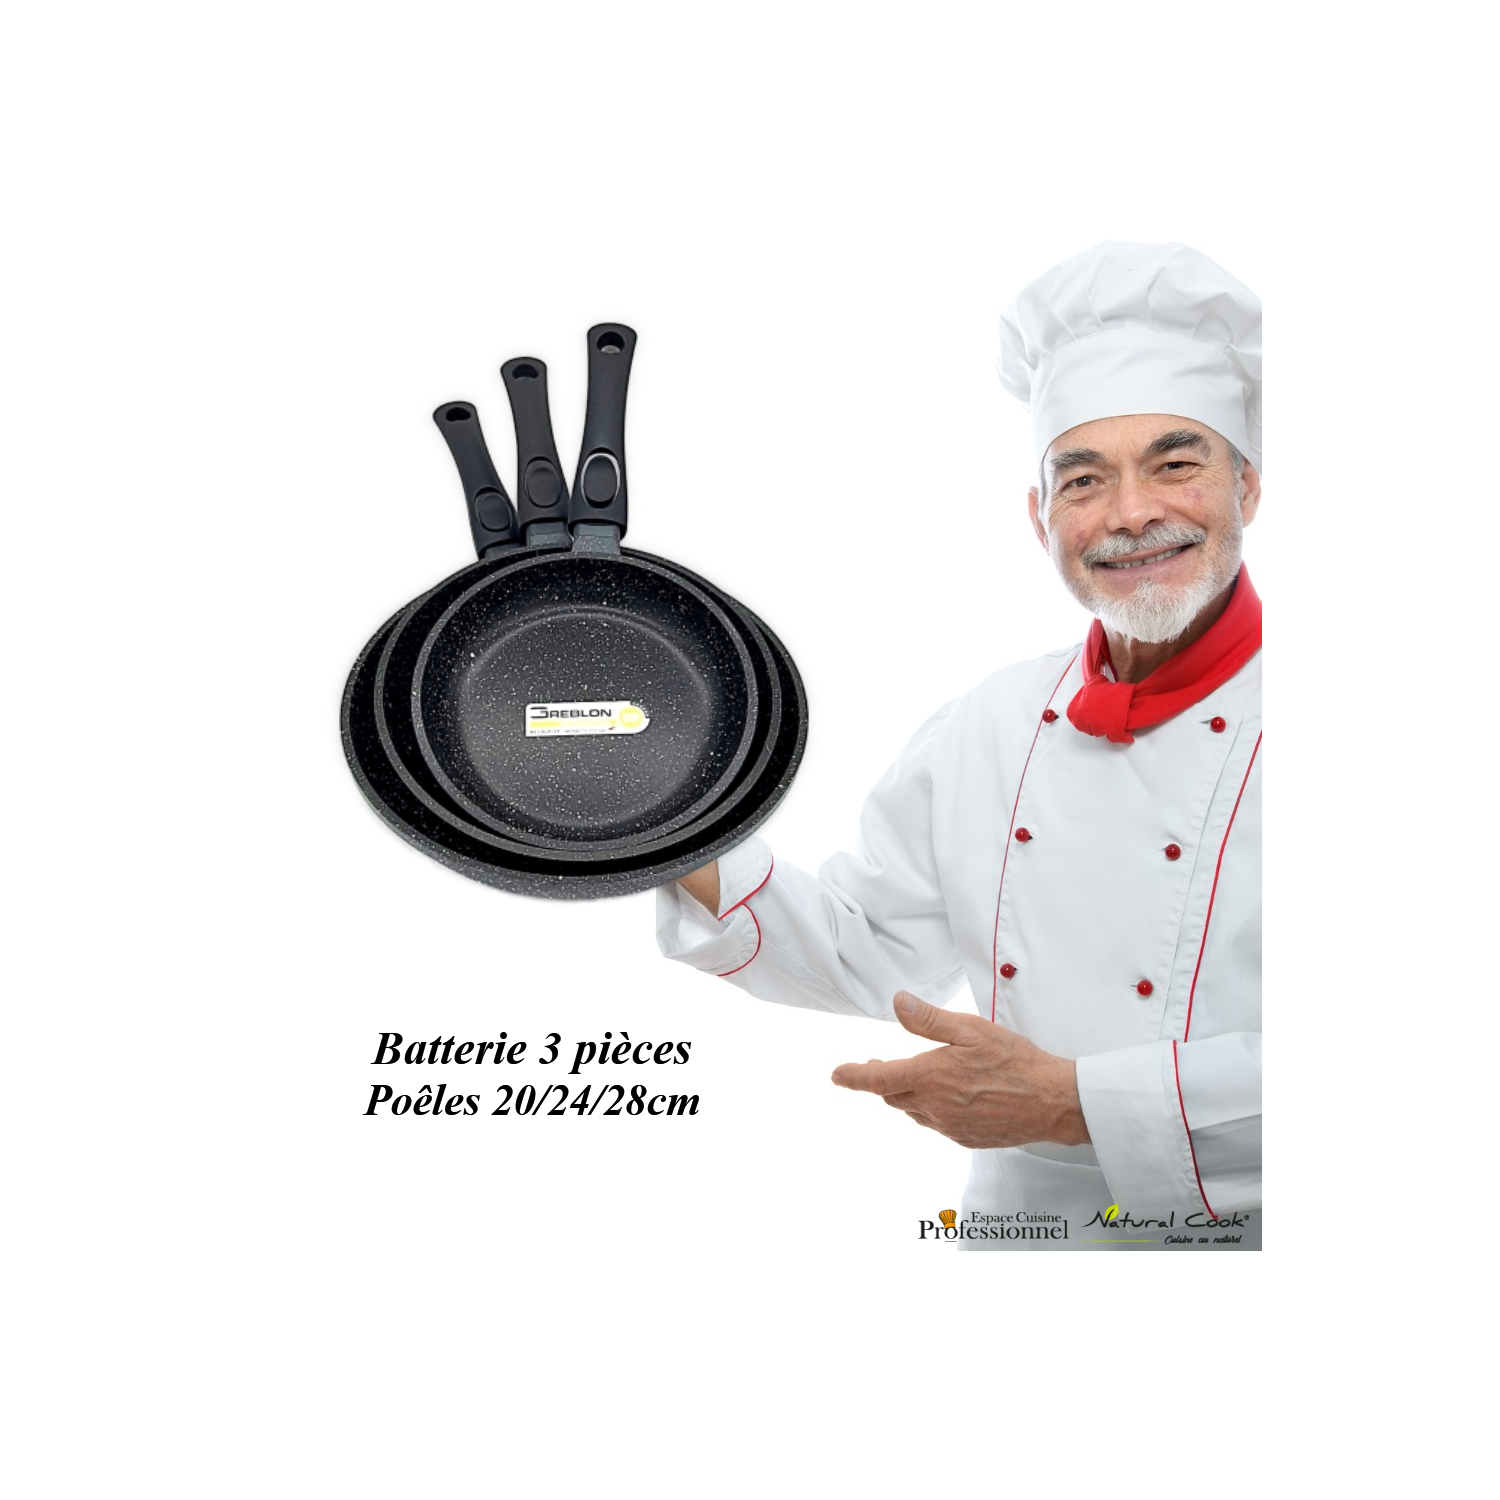 Poêles 20 24 28 cm Espace cuisine Pro 2022